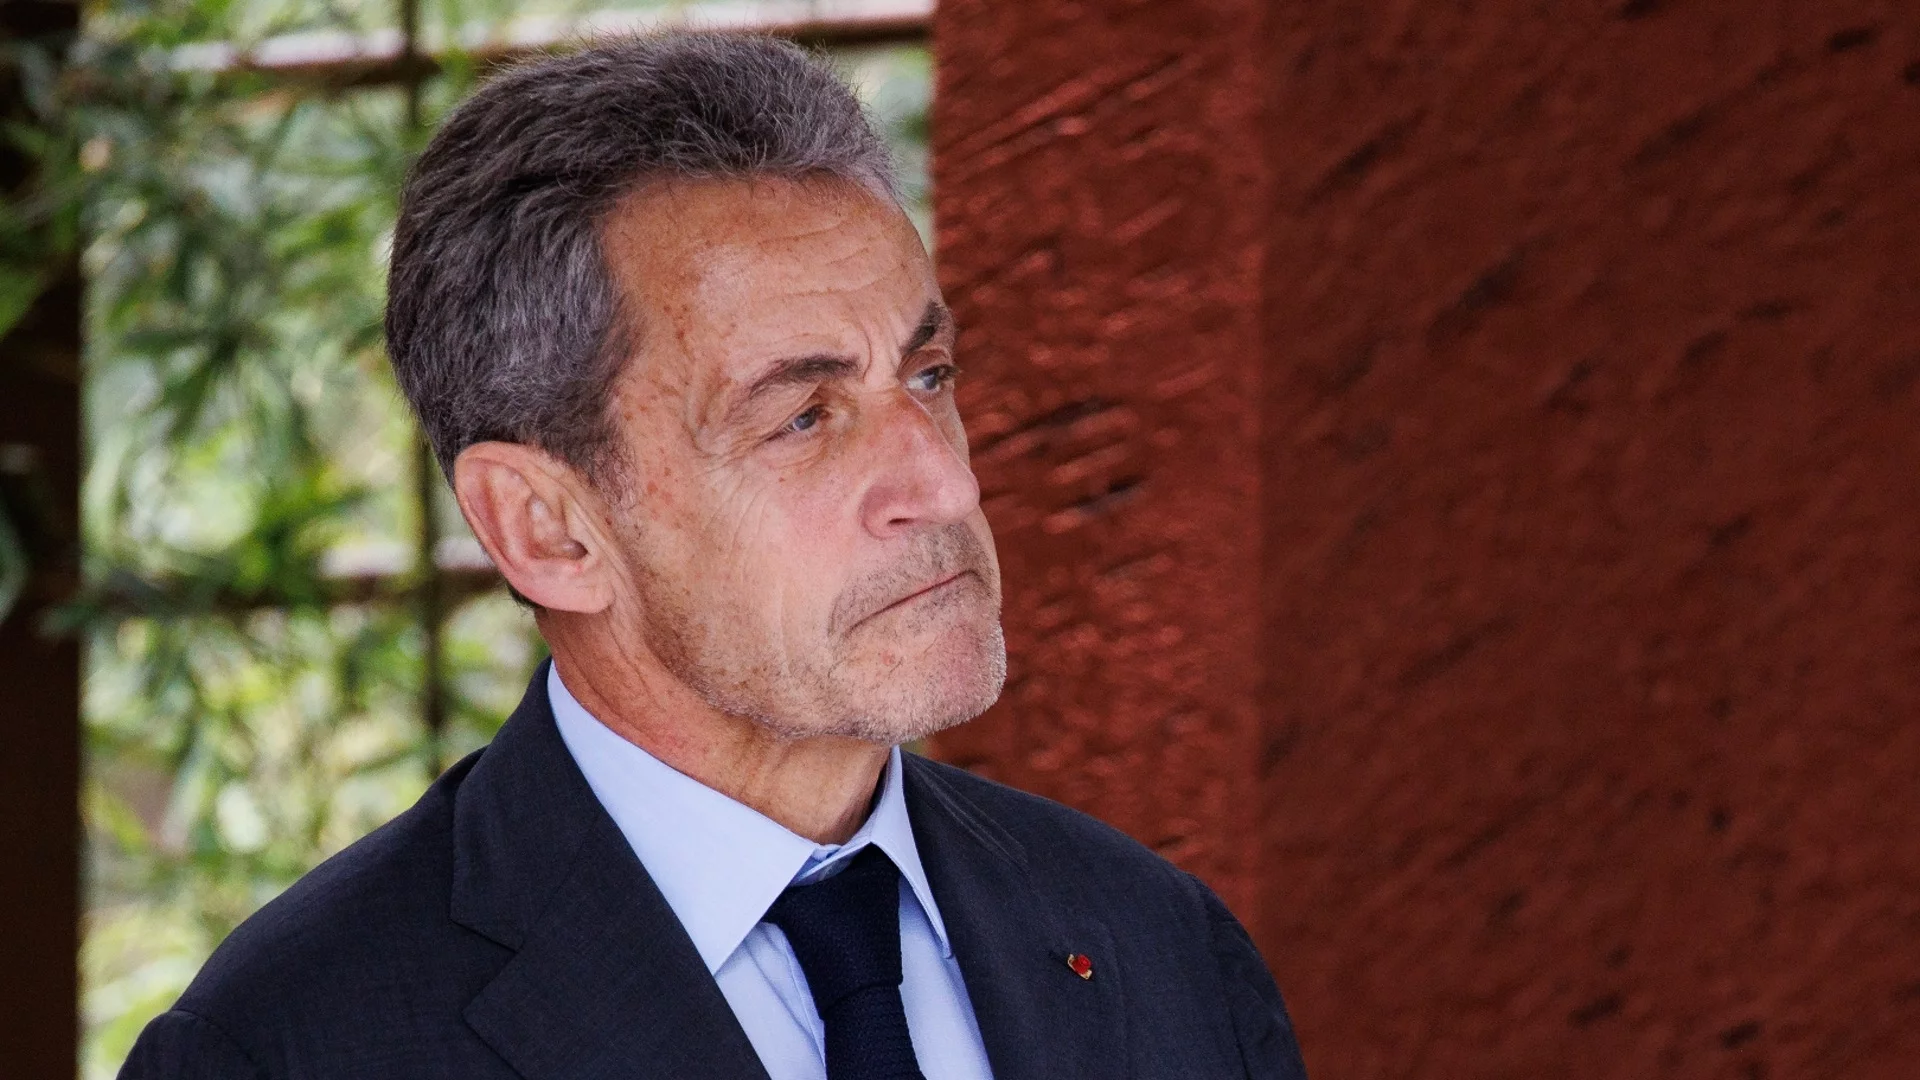 Никола Саркози: Франция е заплашена от безпрецедентен хаос без изход